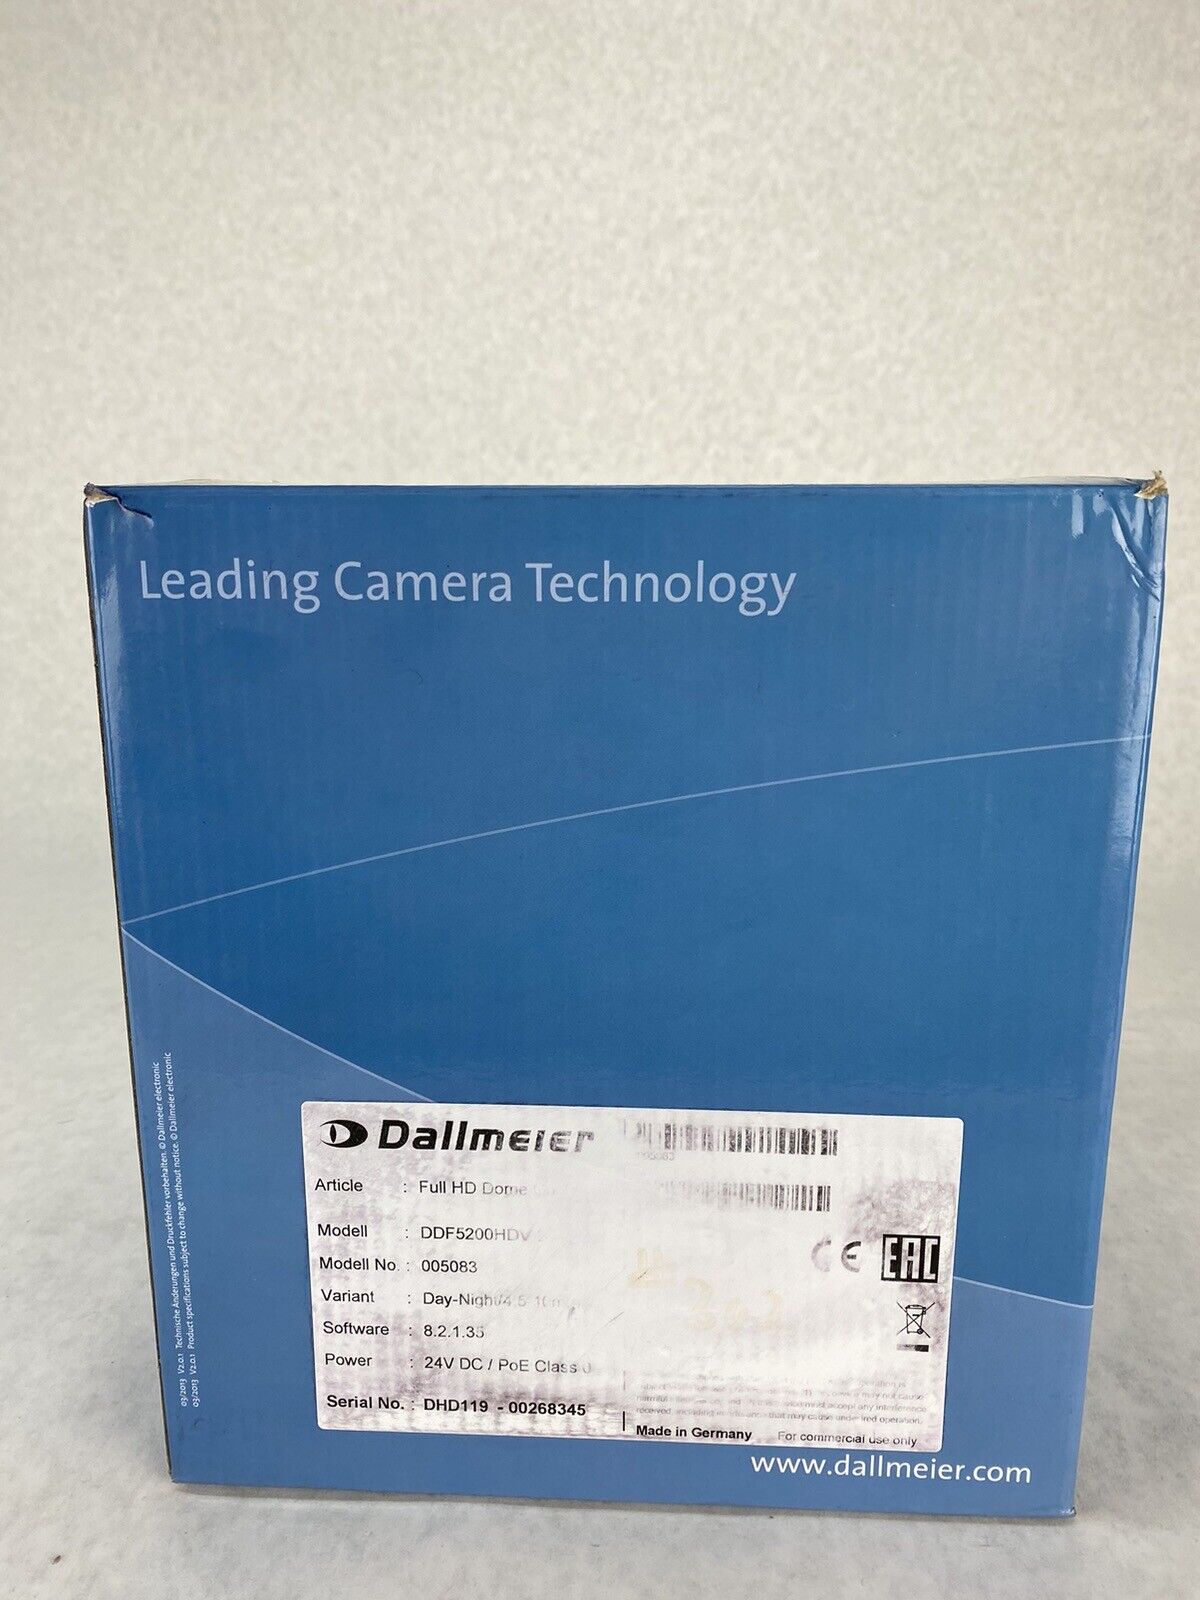 Dallmeier DDF5200HDV Full HD Dome Security Camera 005083 Day-Night 4.5-10mm